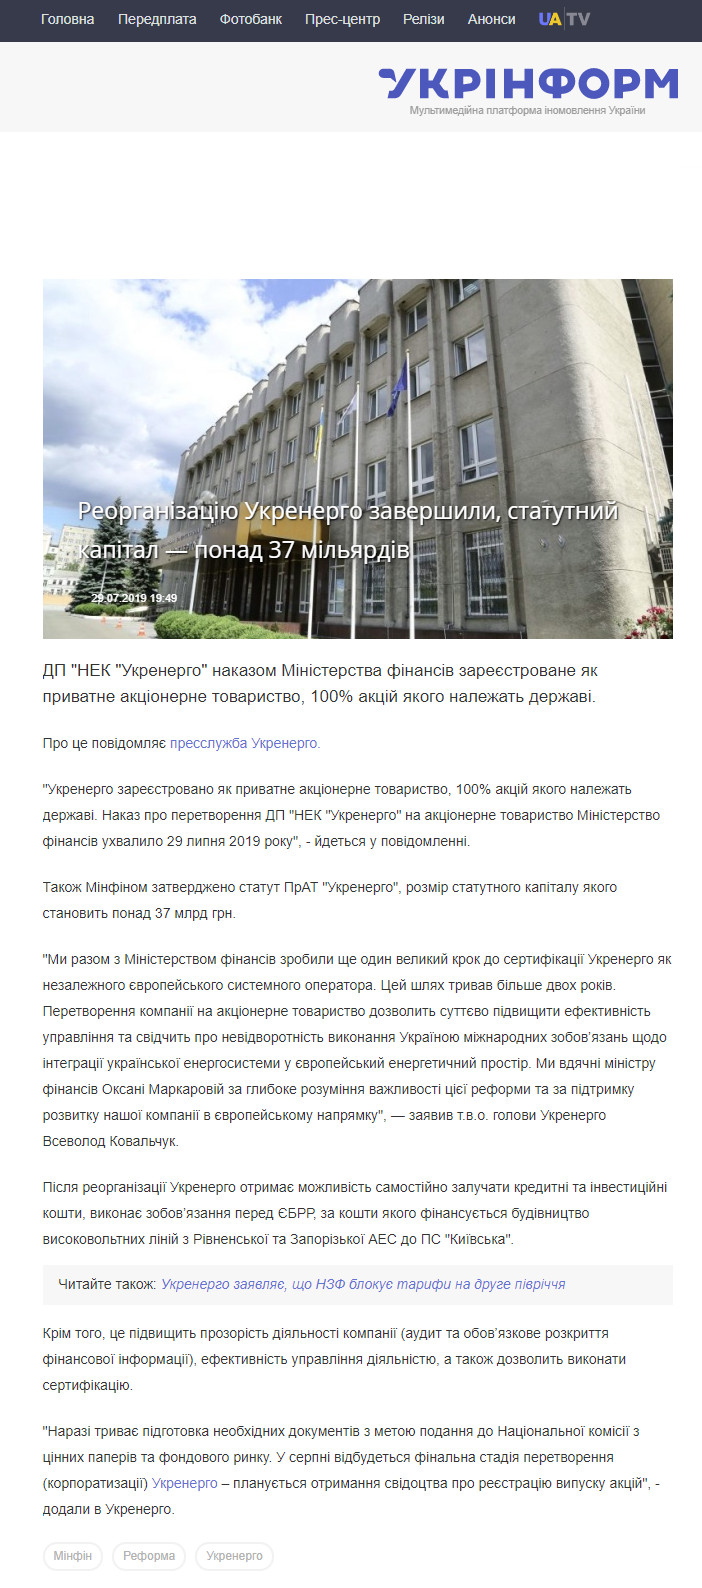 https://www.ukrinform.ua/rubric-economy/2750225-reorganizaciu-ukrenergo-zaversili-statutnij-kapital-ponad-37-milardiv.html